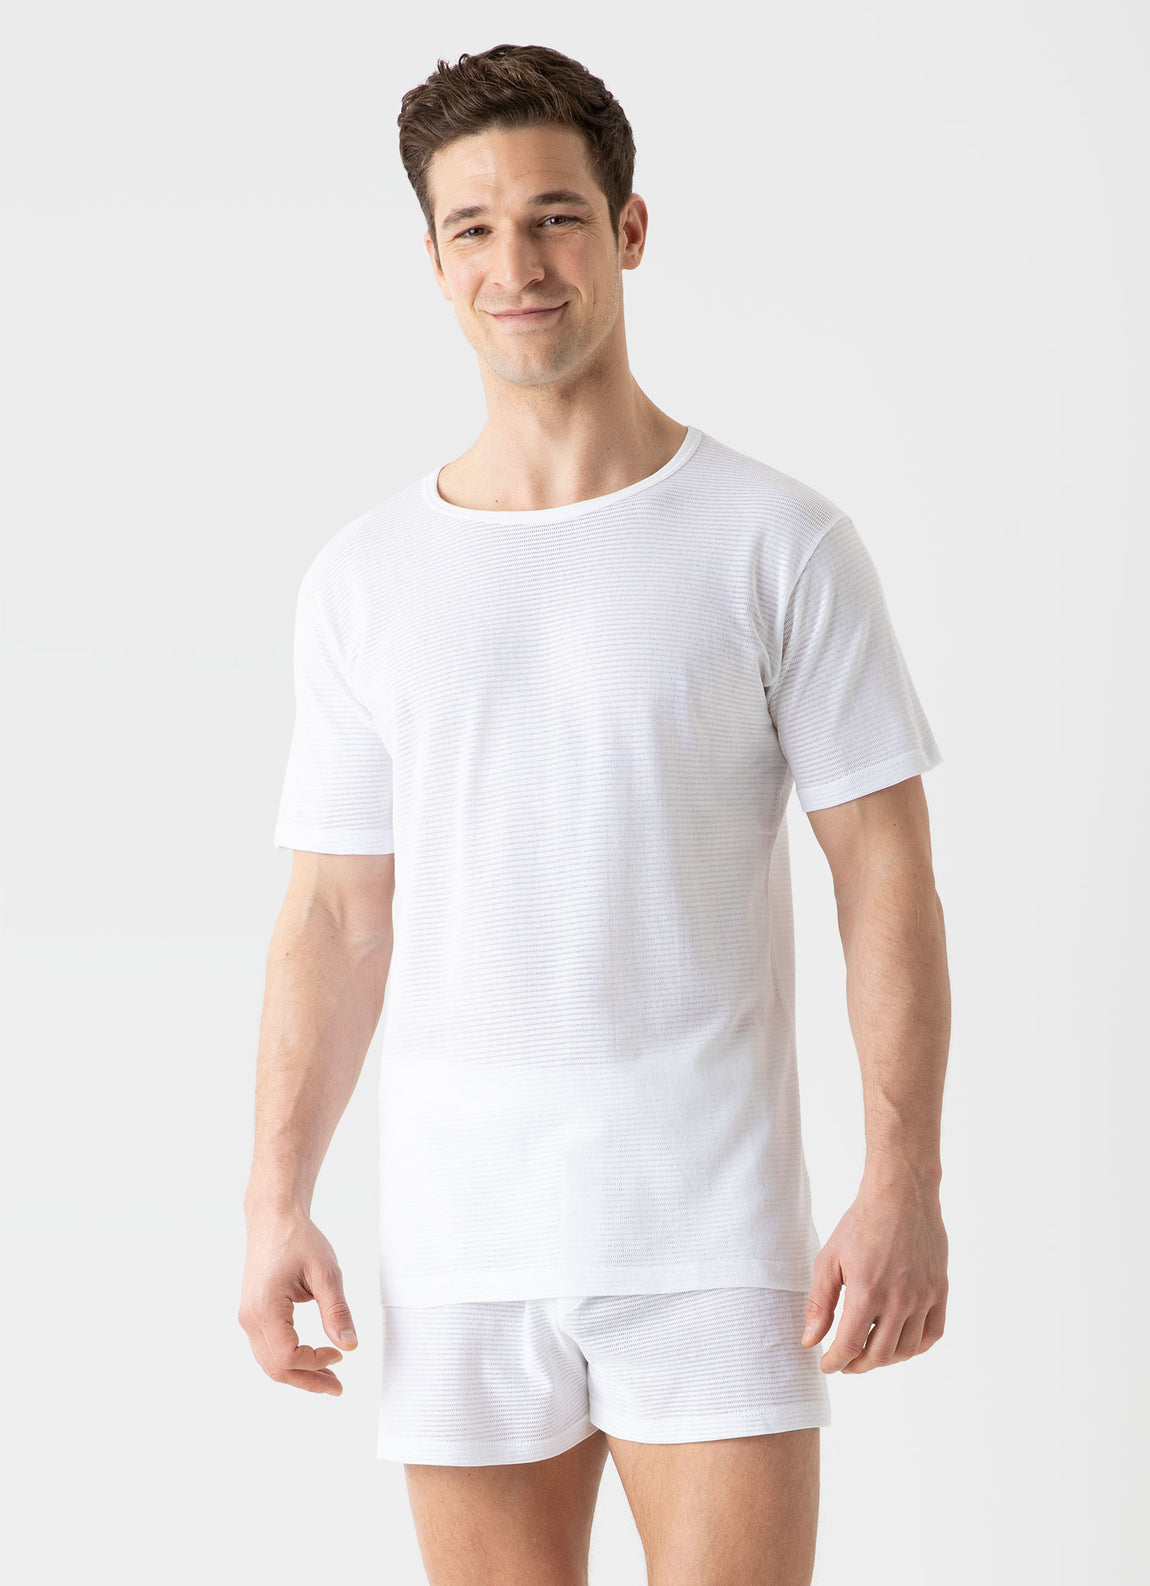 Men's Cellular Cotton Underwear T-shirt in White | Sunspel